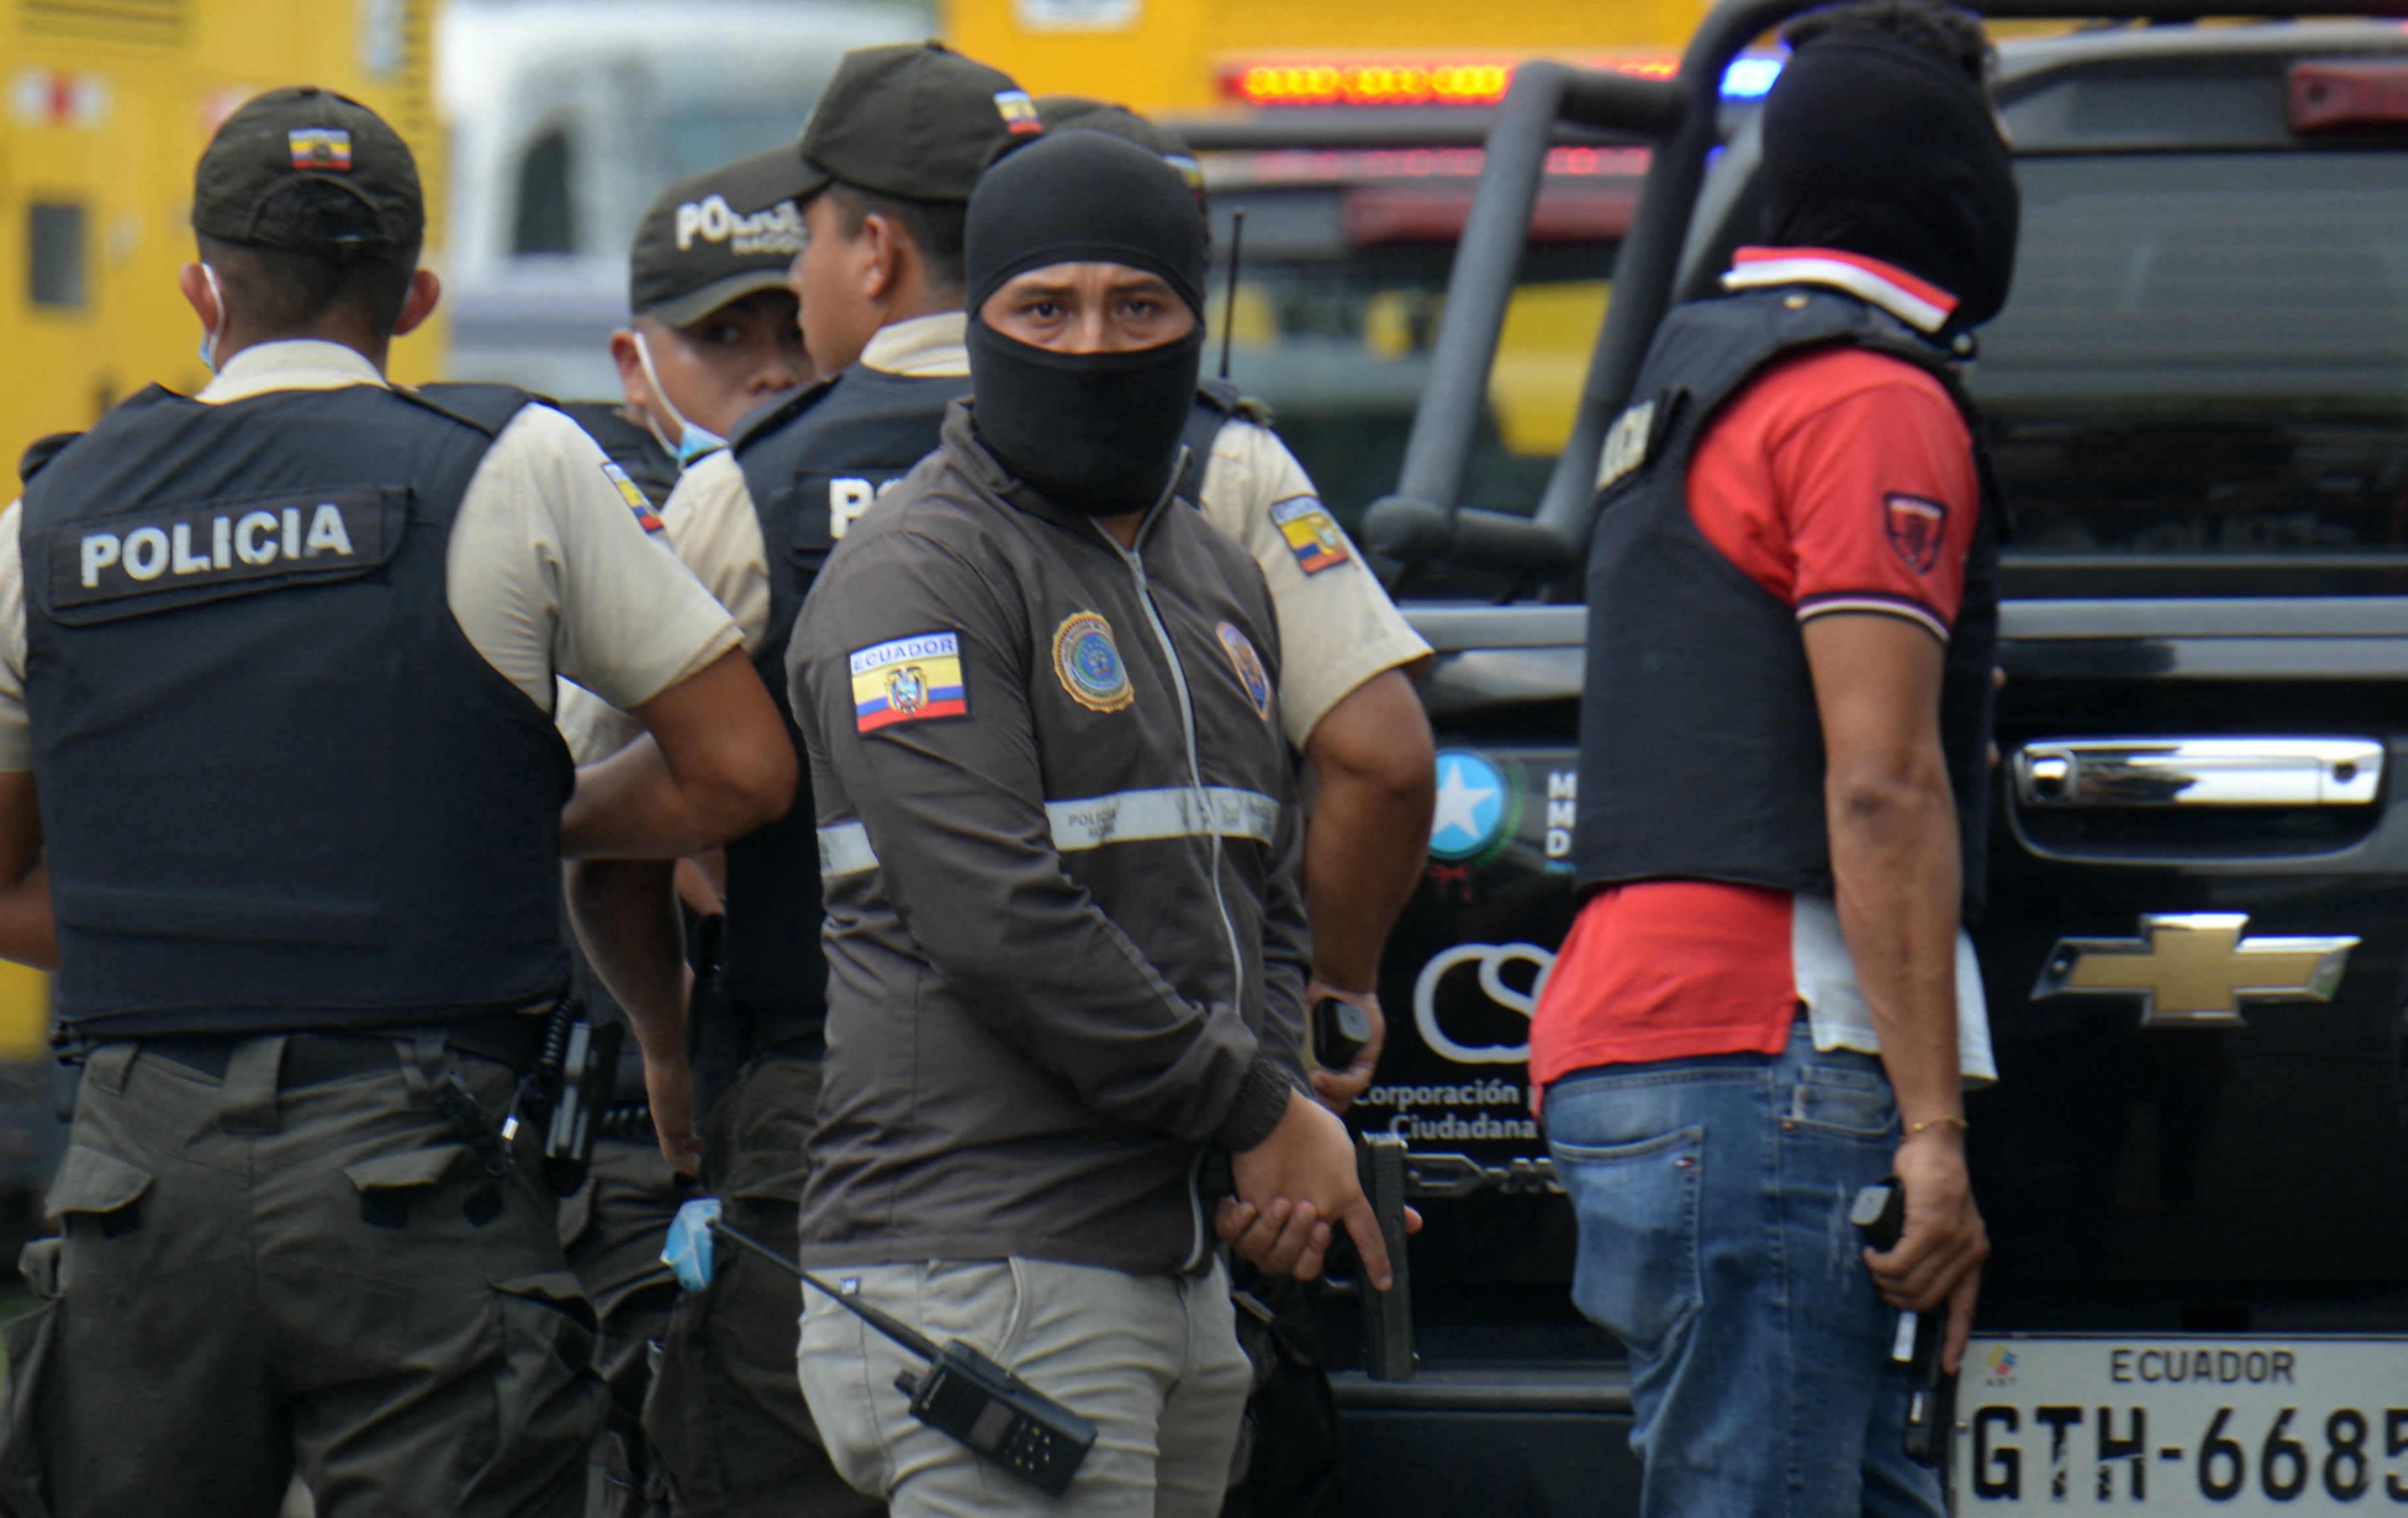 Ekvadorda kütləvi iğtişaşlar: İkisi polis olmaqla, 10 nəfər öldürüldü - VİDEO